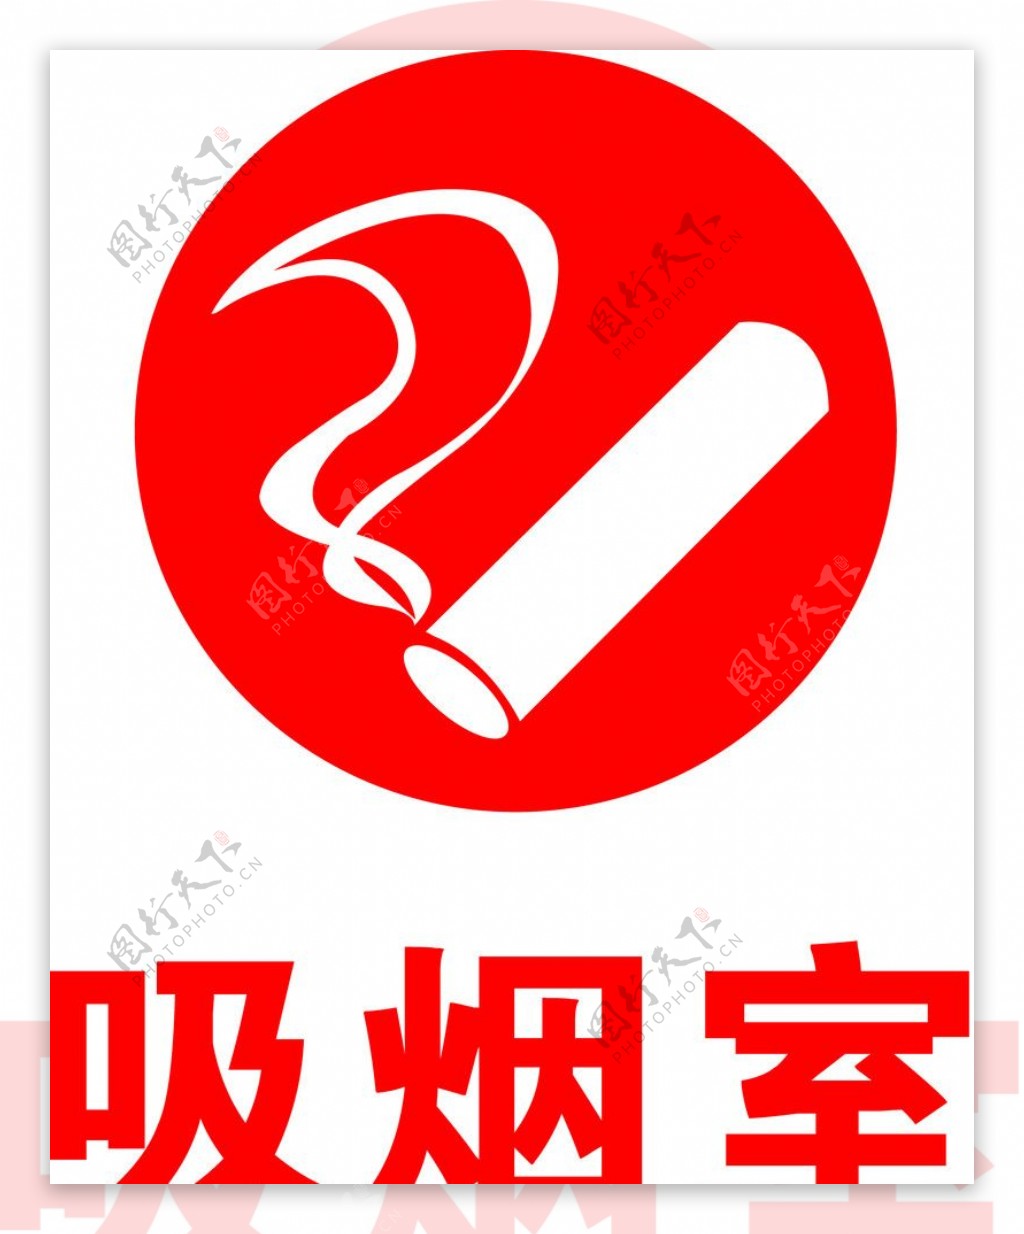 吸烟室标志图片